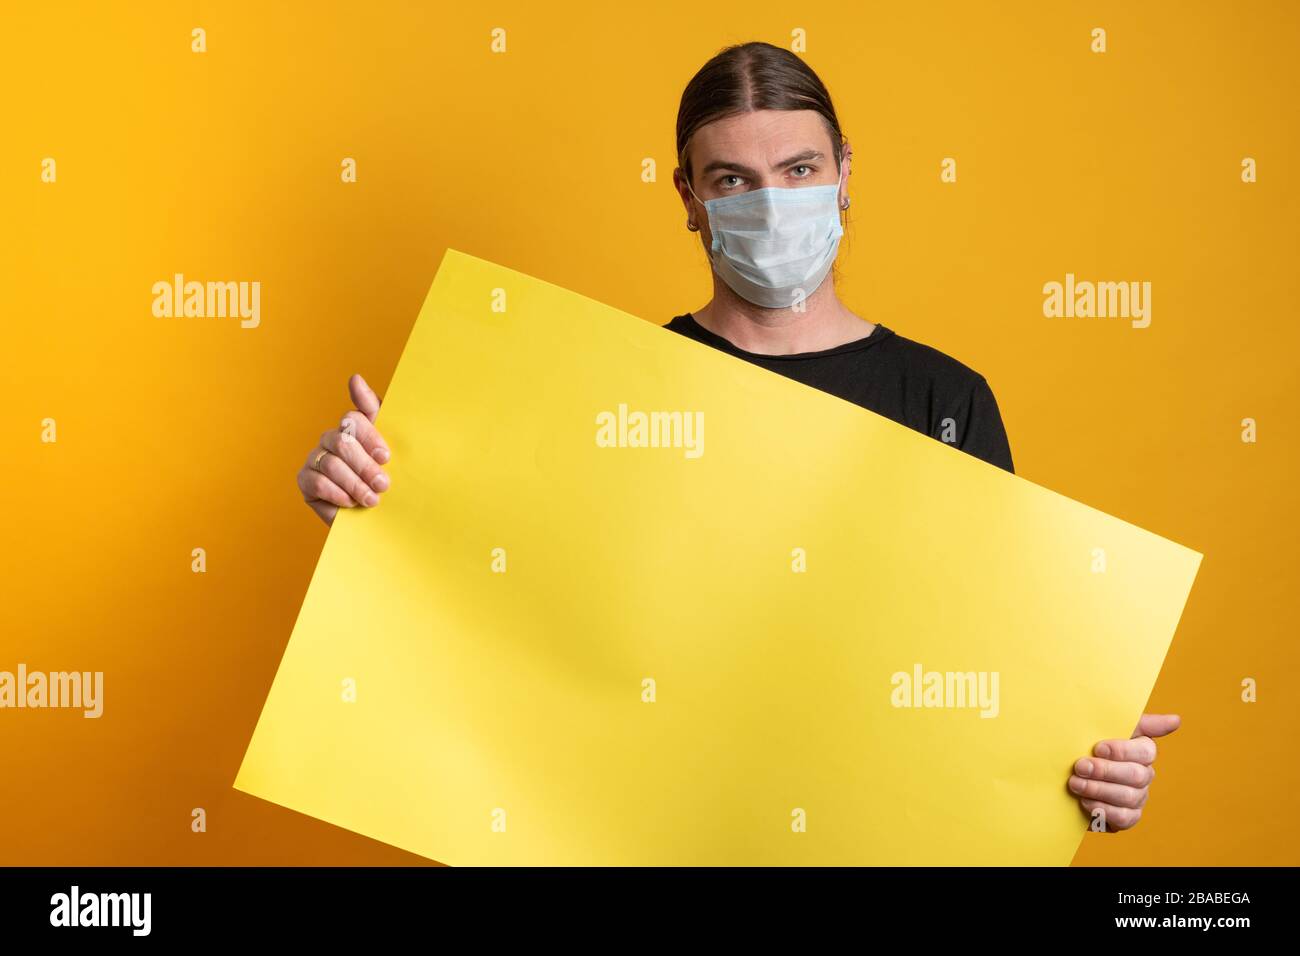 Primo piano di un giovane con maschera protettiva contro l'epidermide virale sta tenendo un cartone giallo vuoto. Spazio di copia disponibile Foto Stock